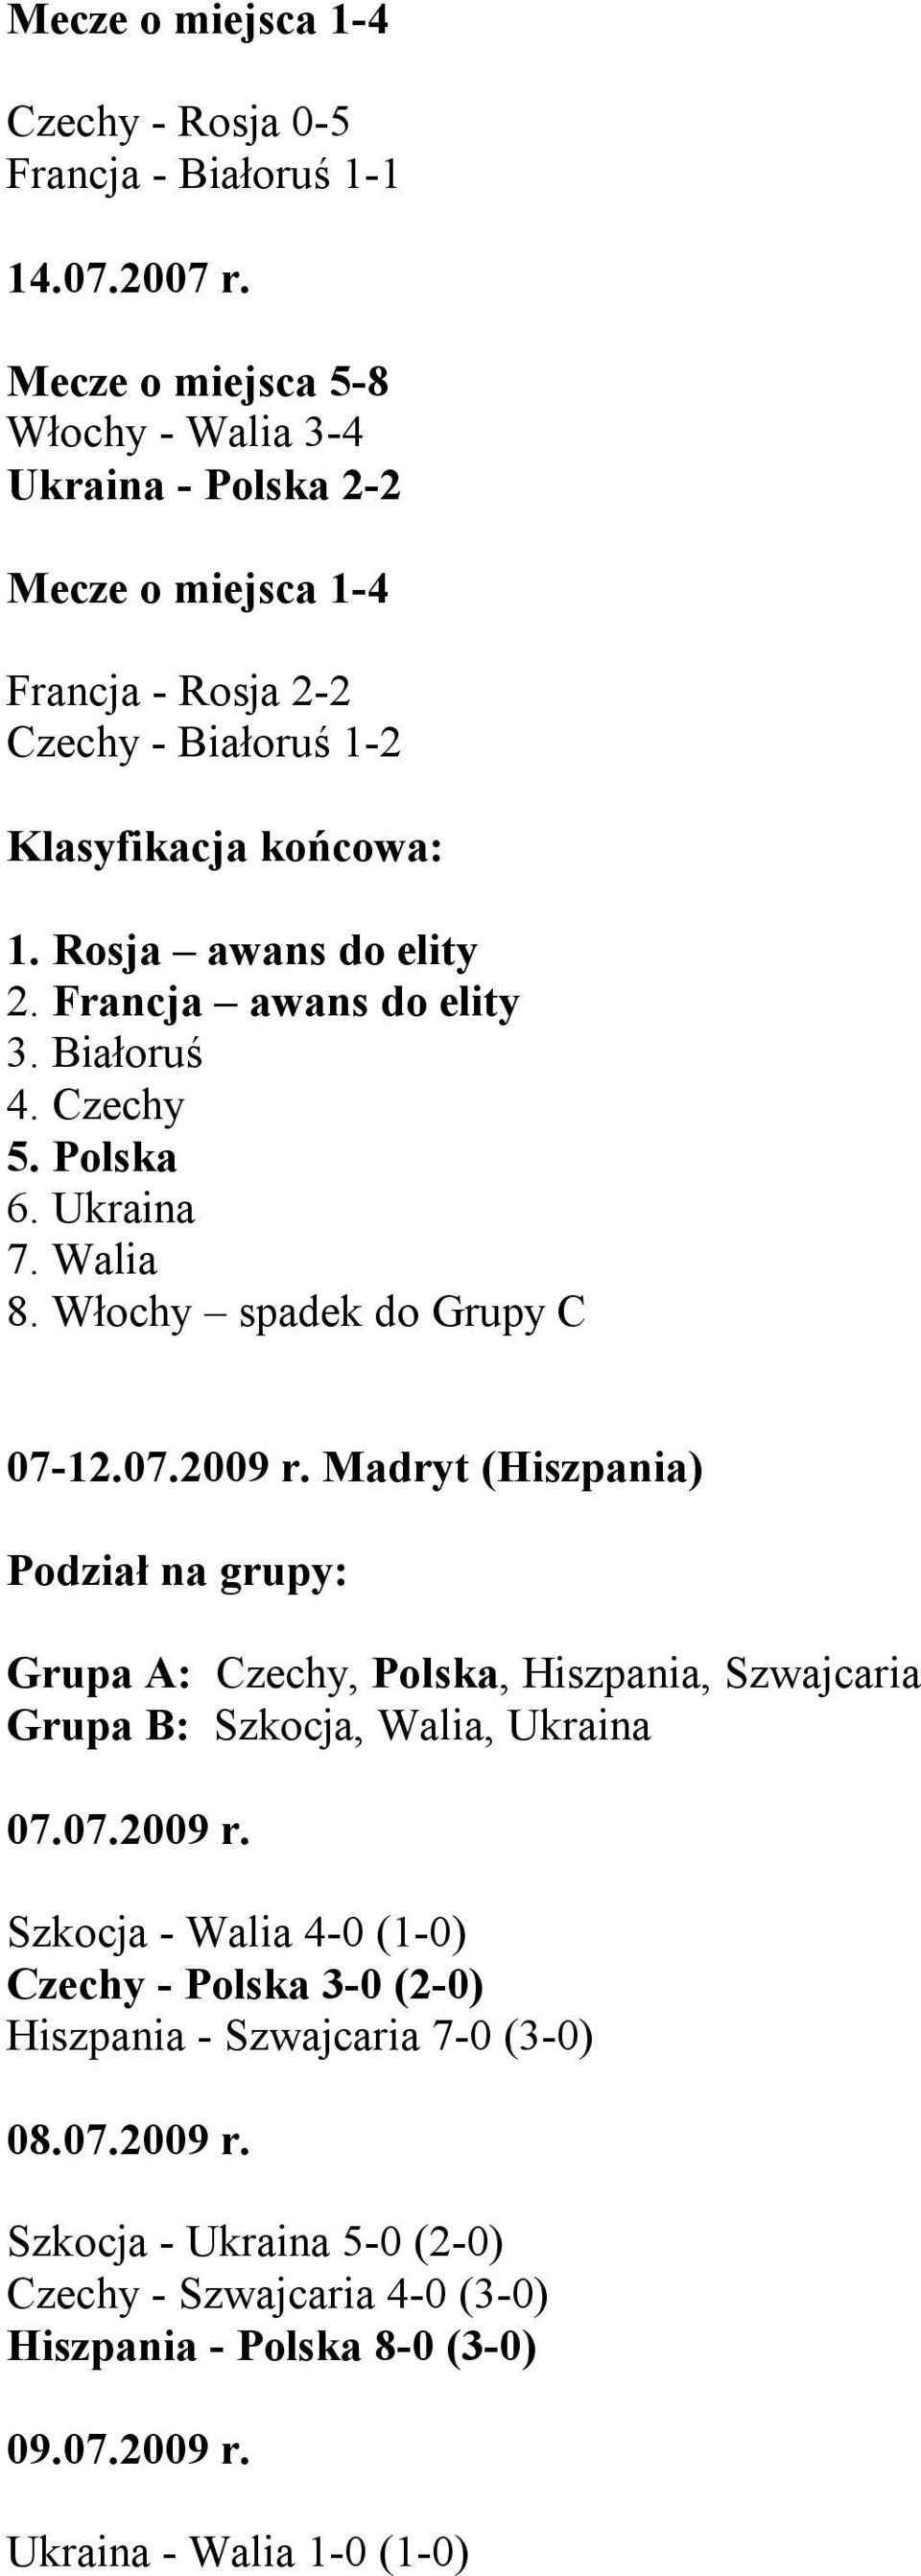 Białoruś 4. Czechy 5. Polska 6. Ukraina 7. Walia 8. Włochy spadek do Grupy C 07-12.07.2009 r.